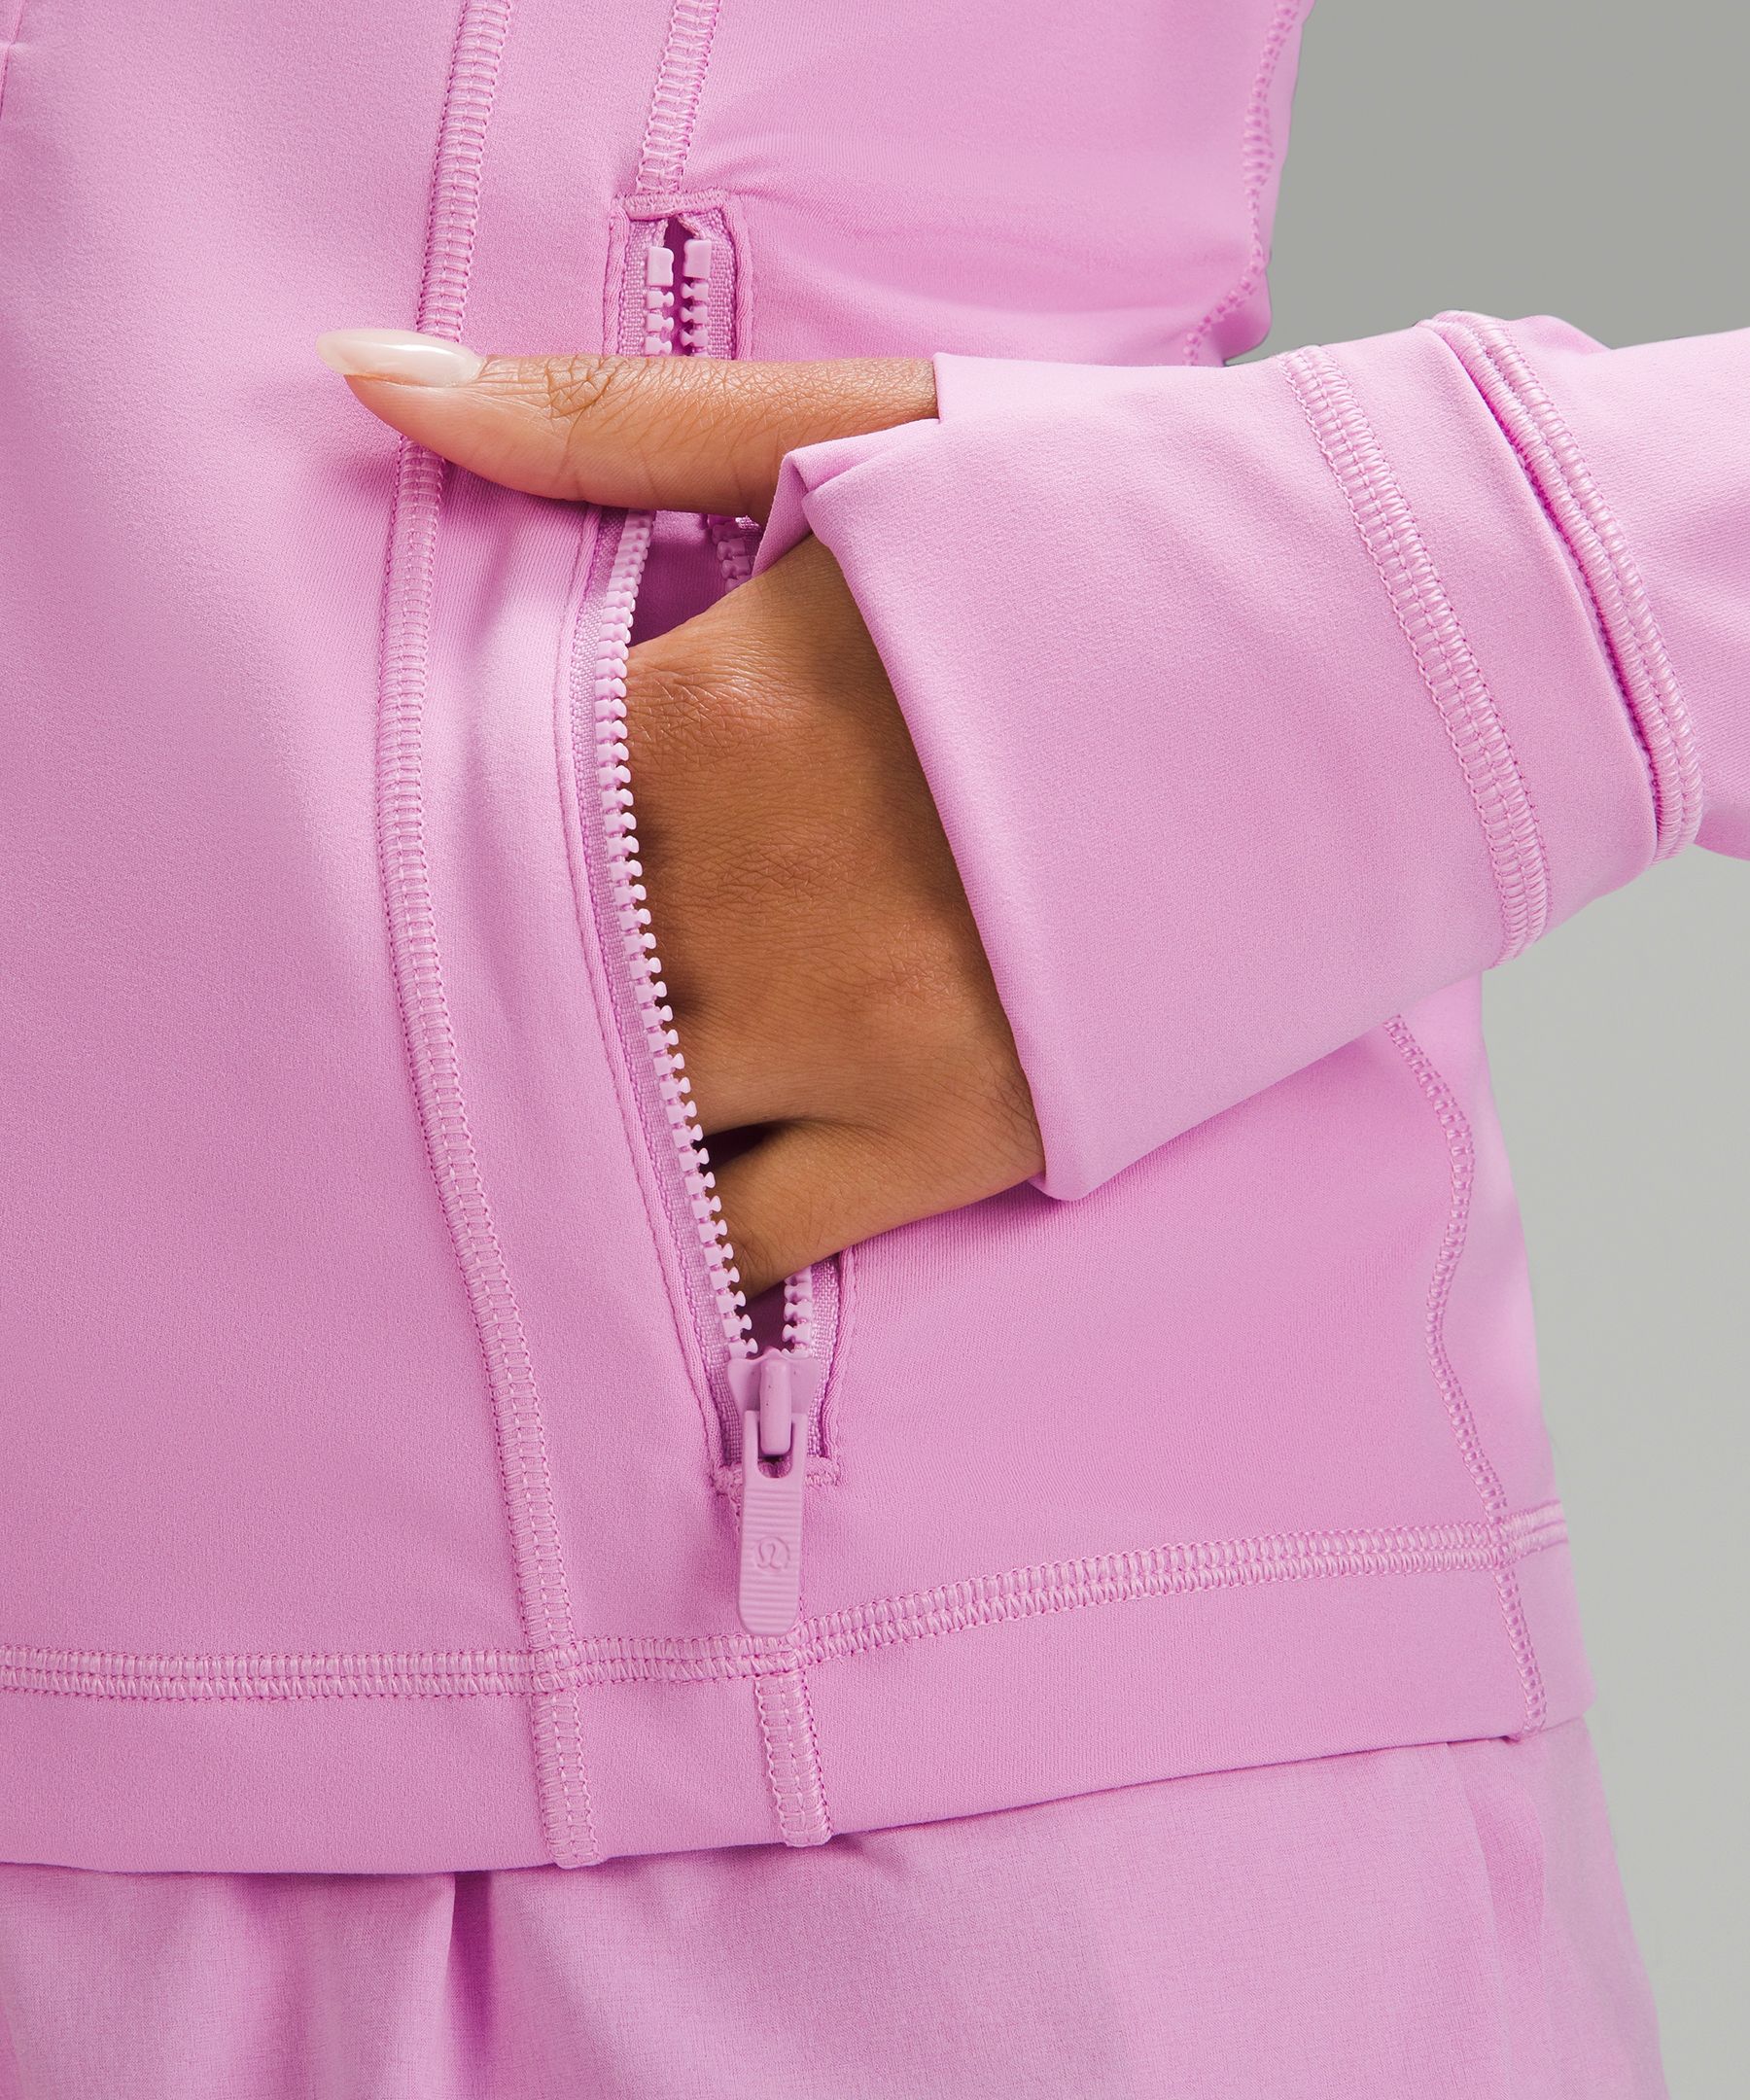 WMTM order is here! Size 12 Hooded Define jacket & Align Tank in Pink Puff  : r/lululemon